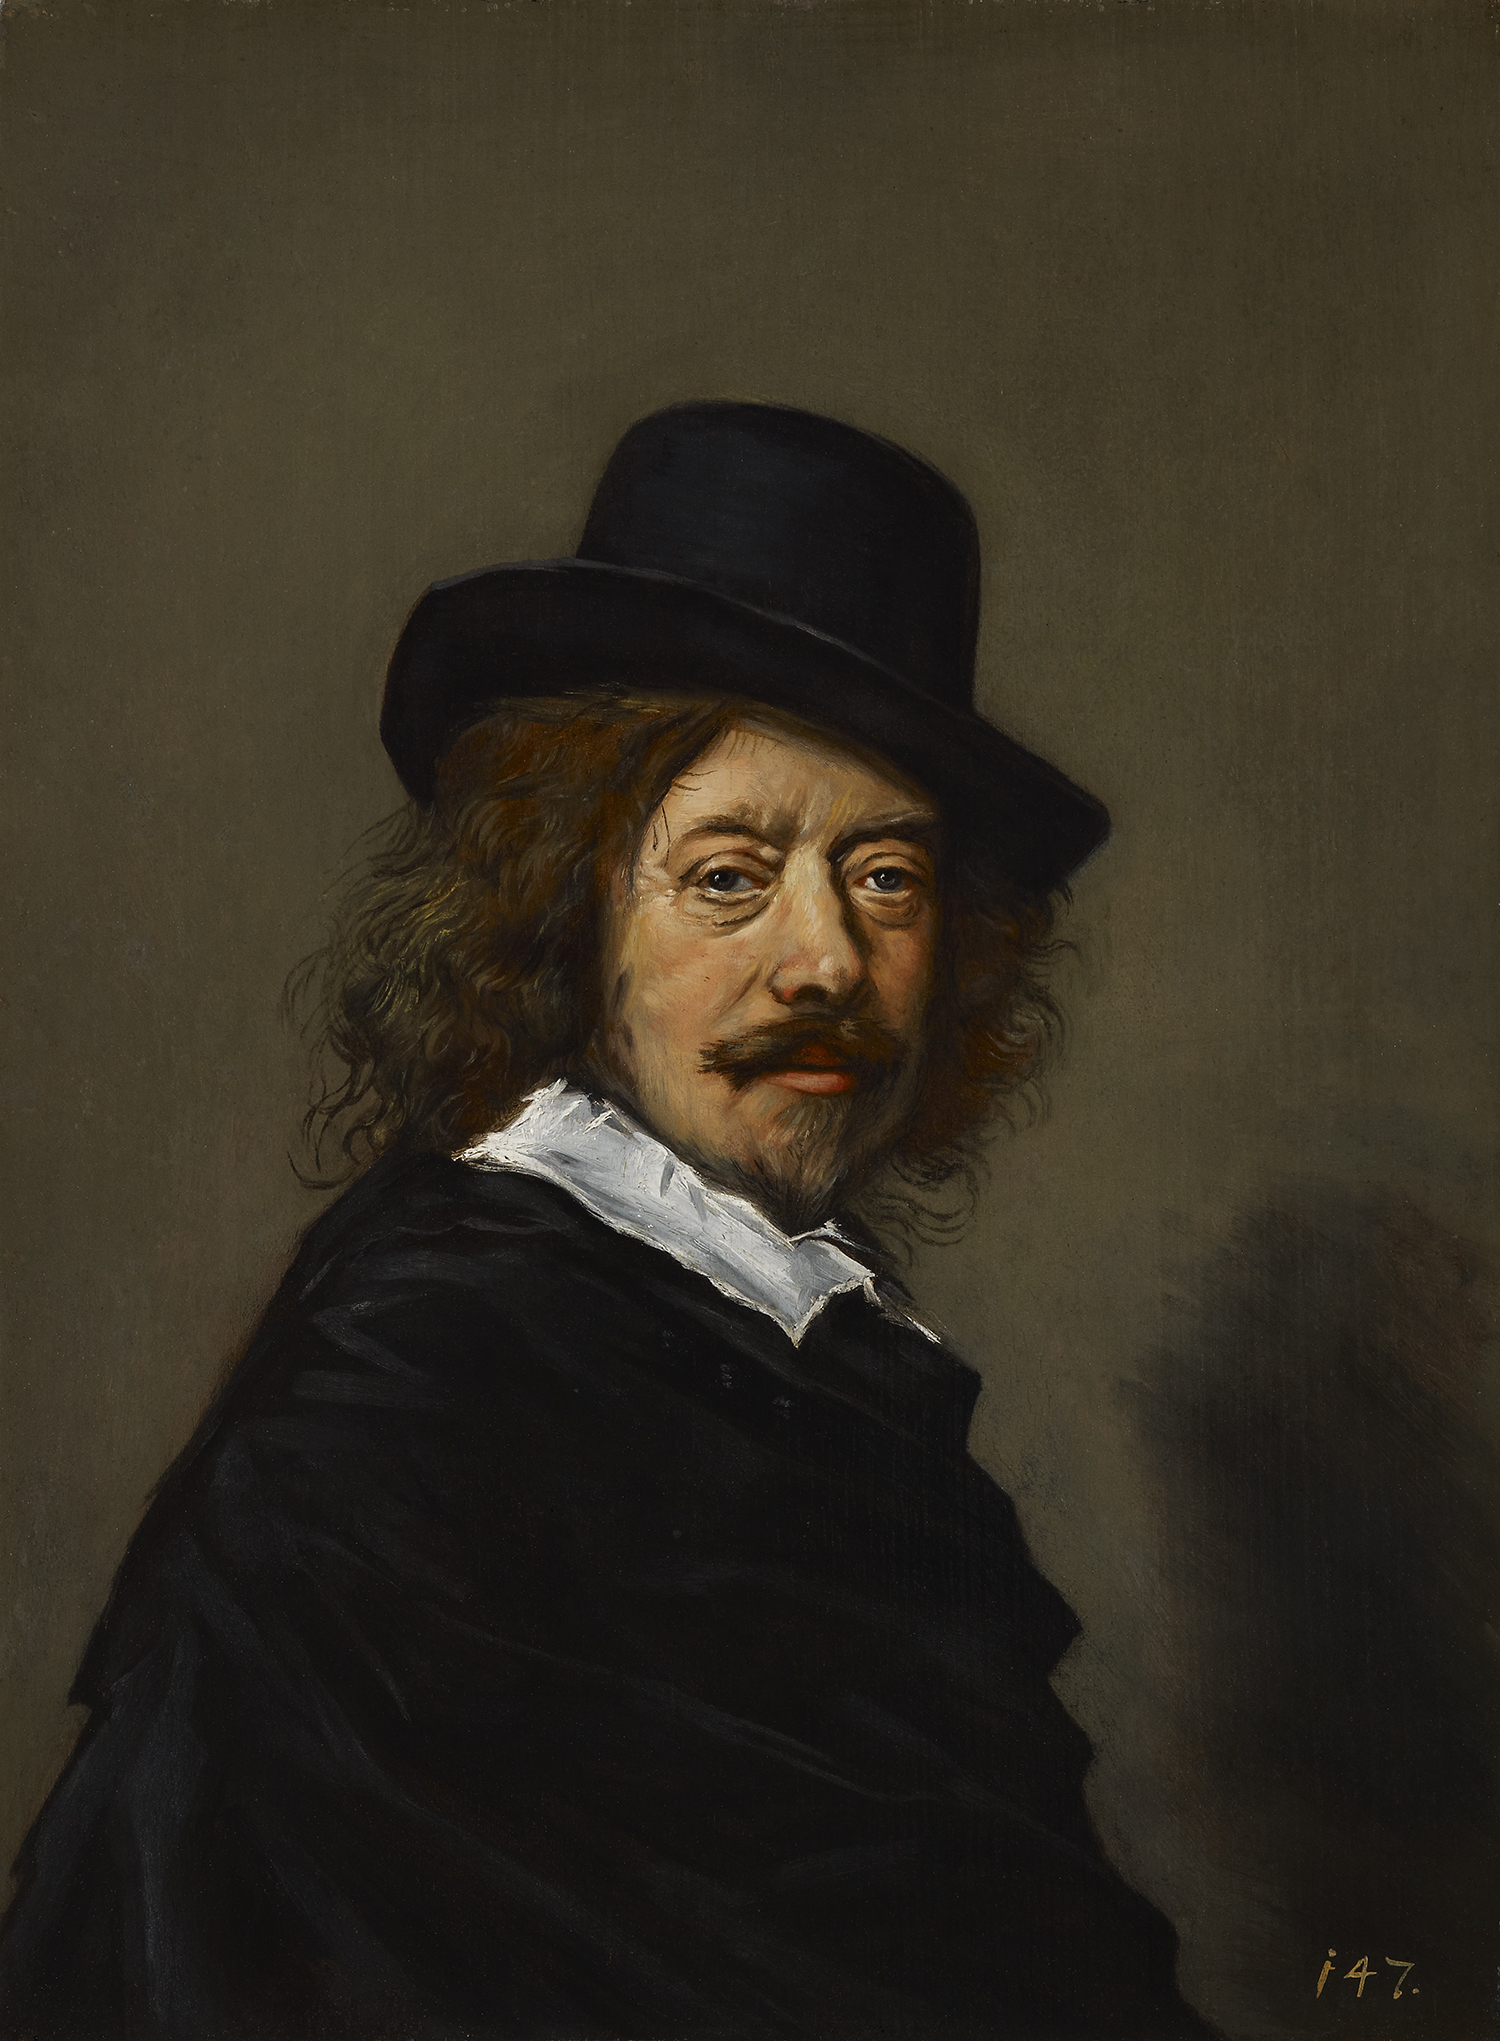 Frans Hals - c. 1582 - 26 August 1666